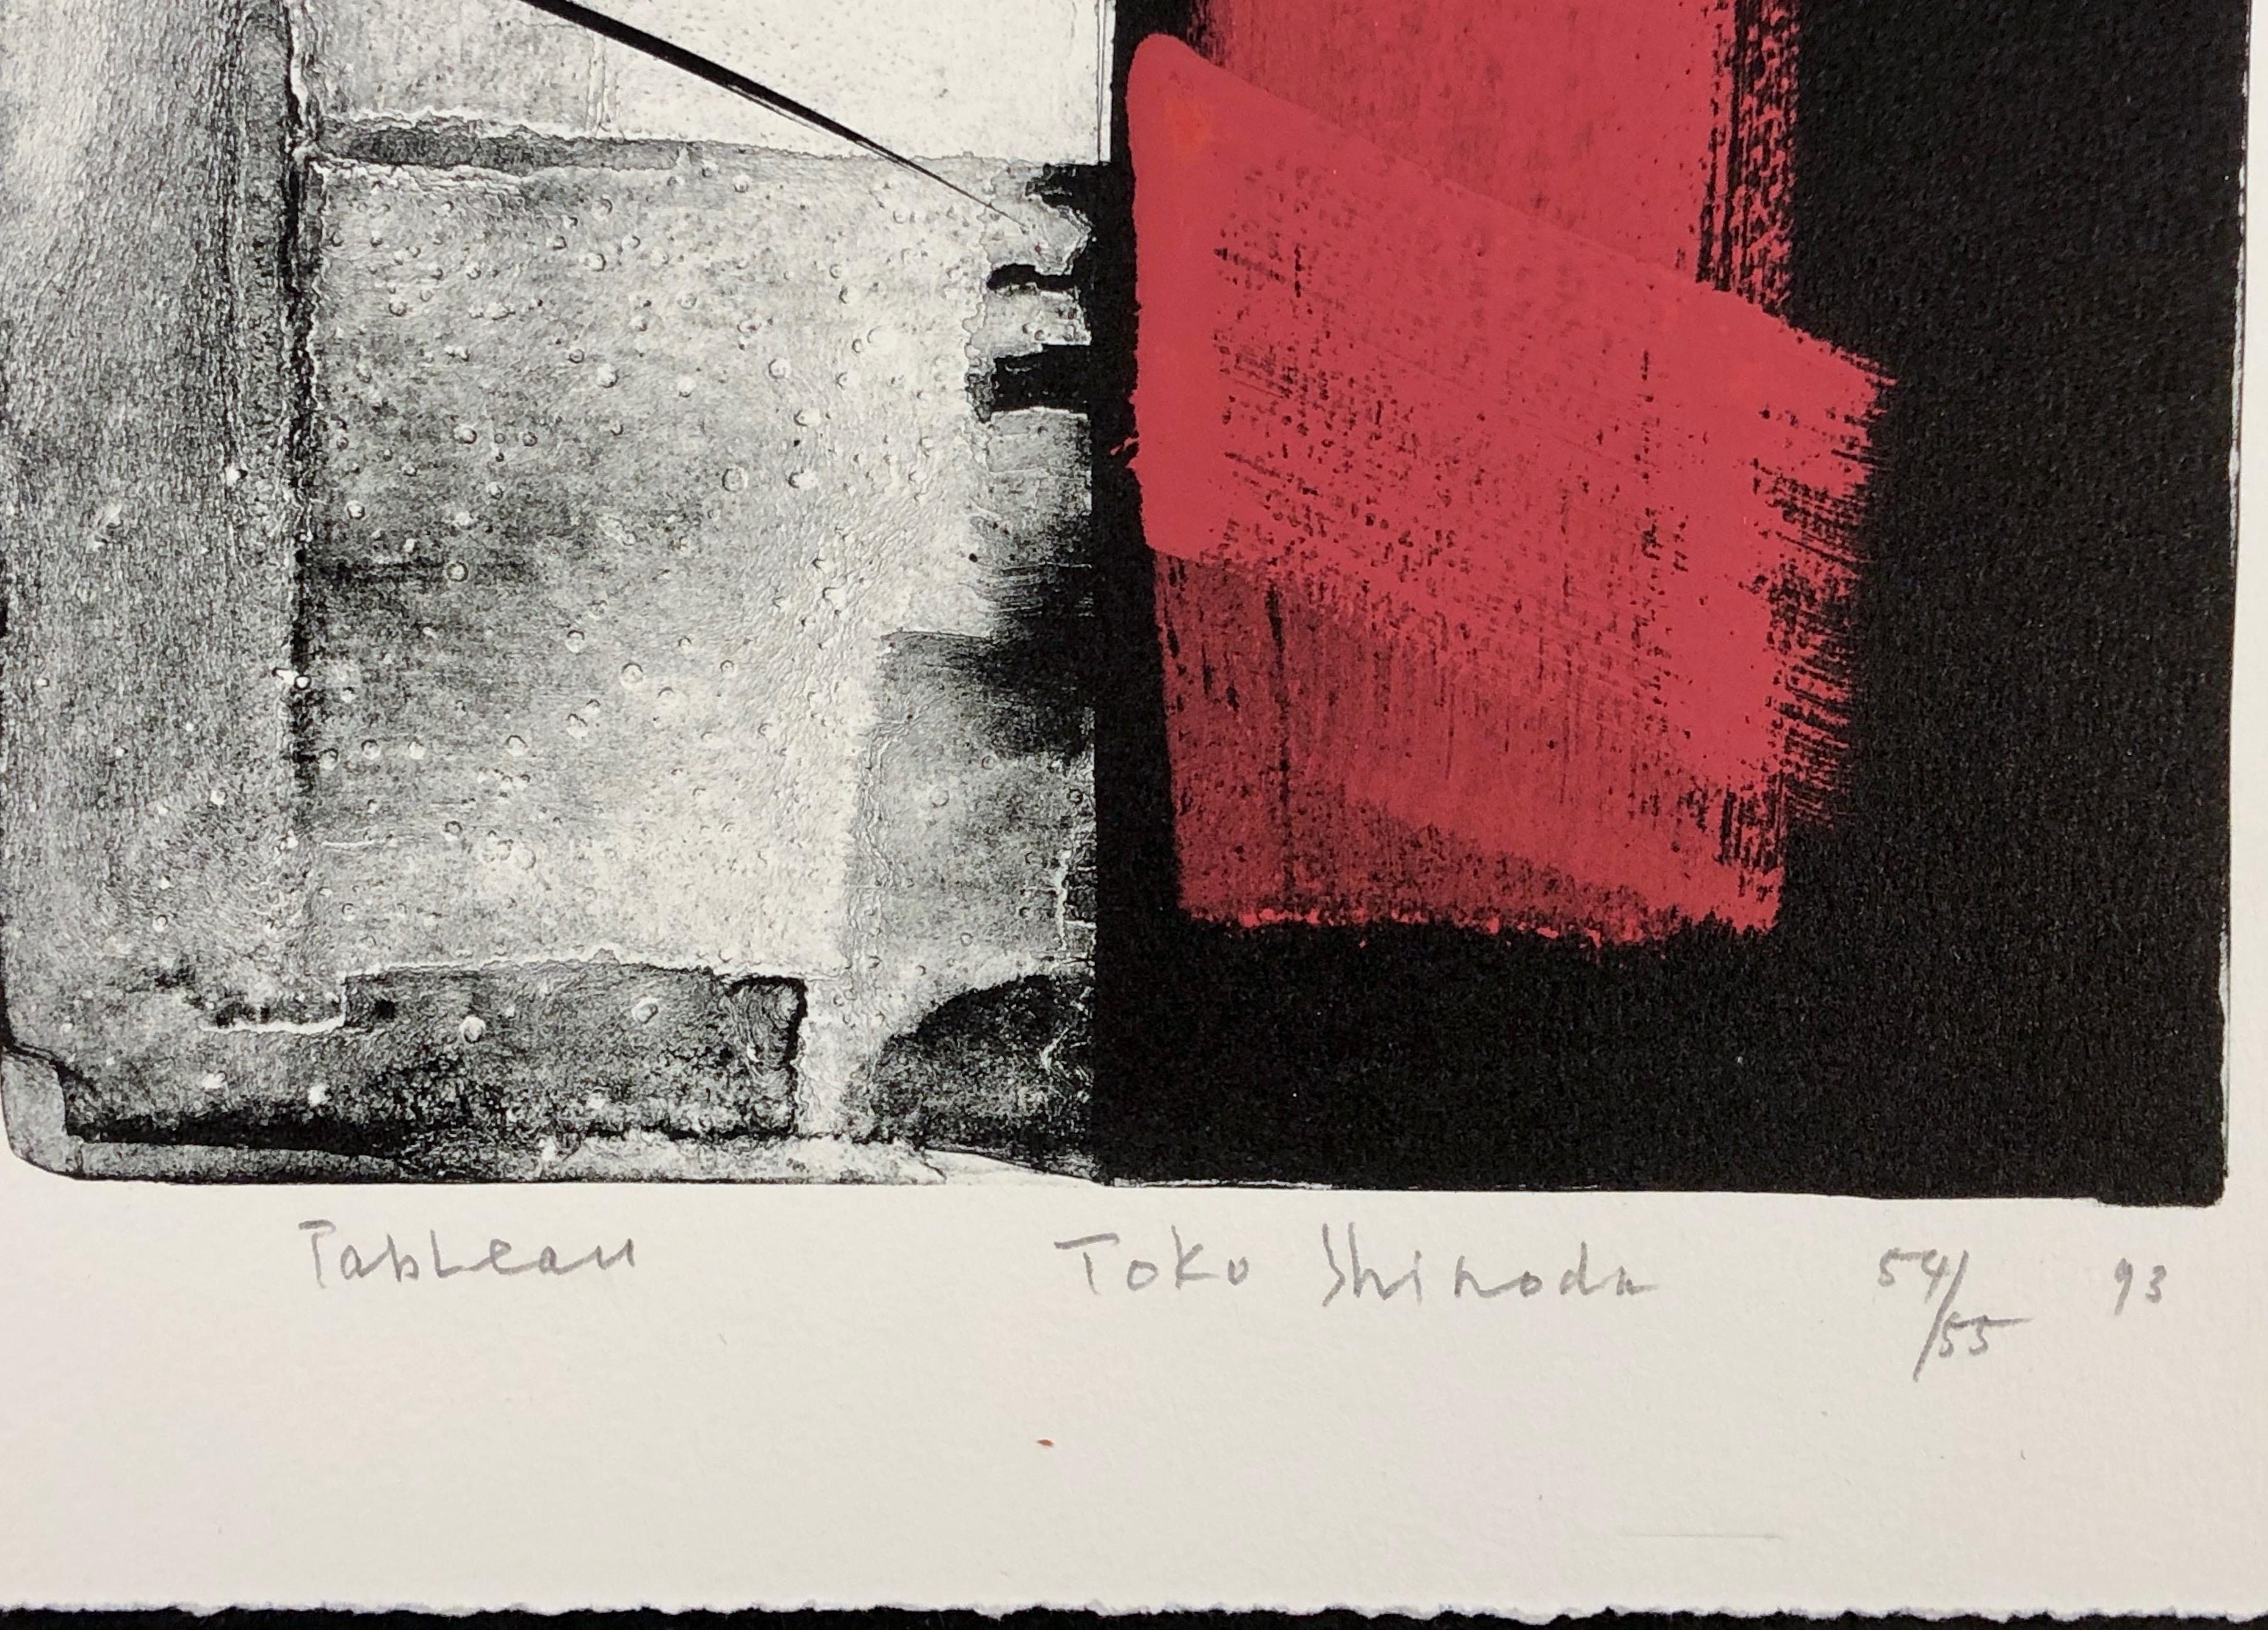 Tischau, japanische Lithographie in limitierter Auflage, schwarz, weiß, rot, signiert, nummeriert – Print von Toko Shinoda